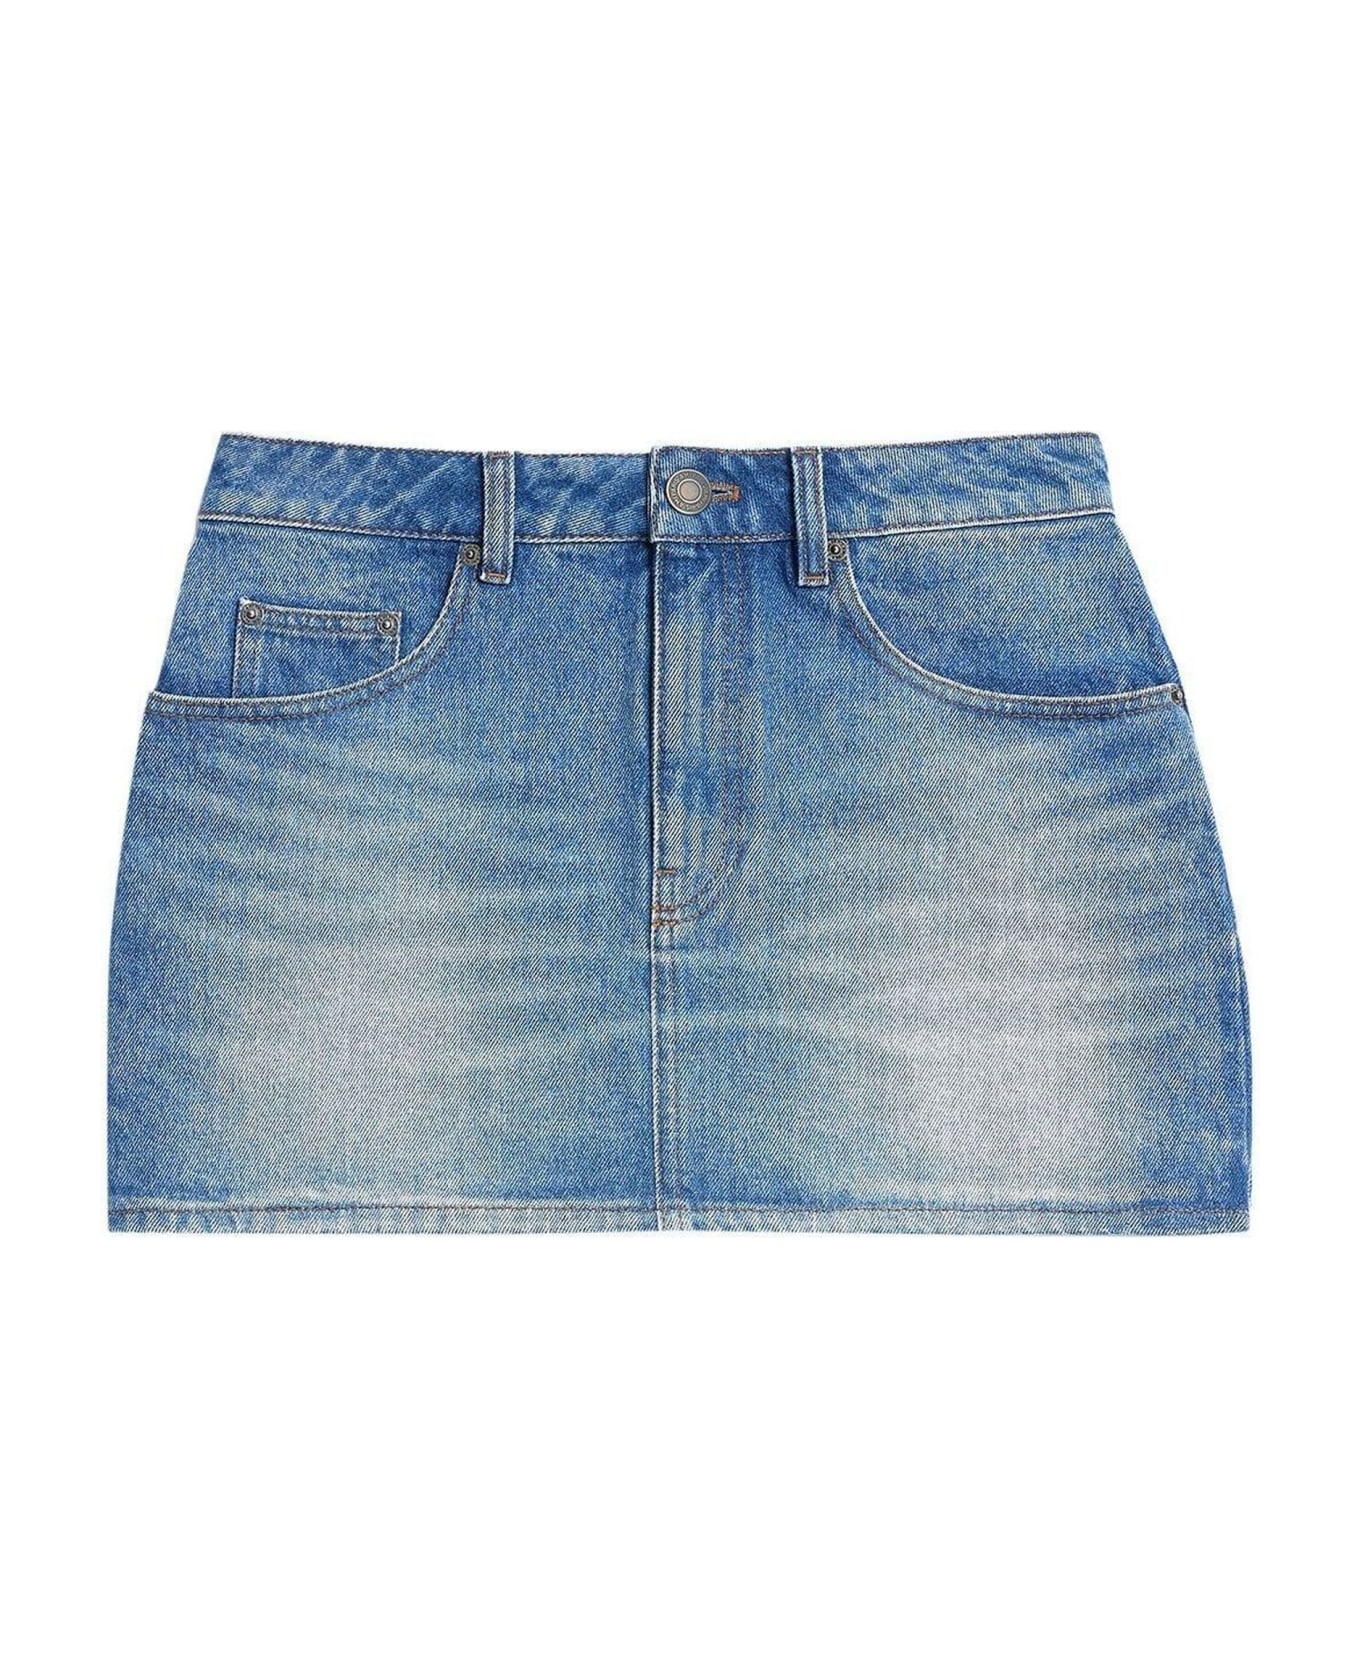 Ami Alexandre Mattiussi Blue Cotton Mini Skirt - Denim スカート